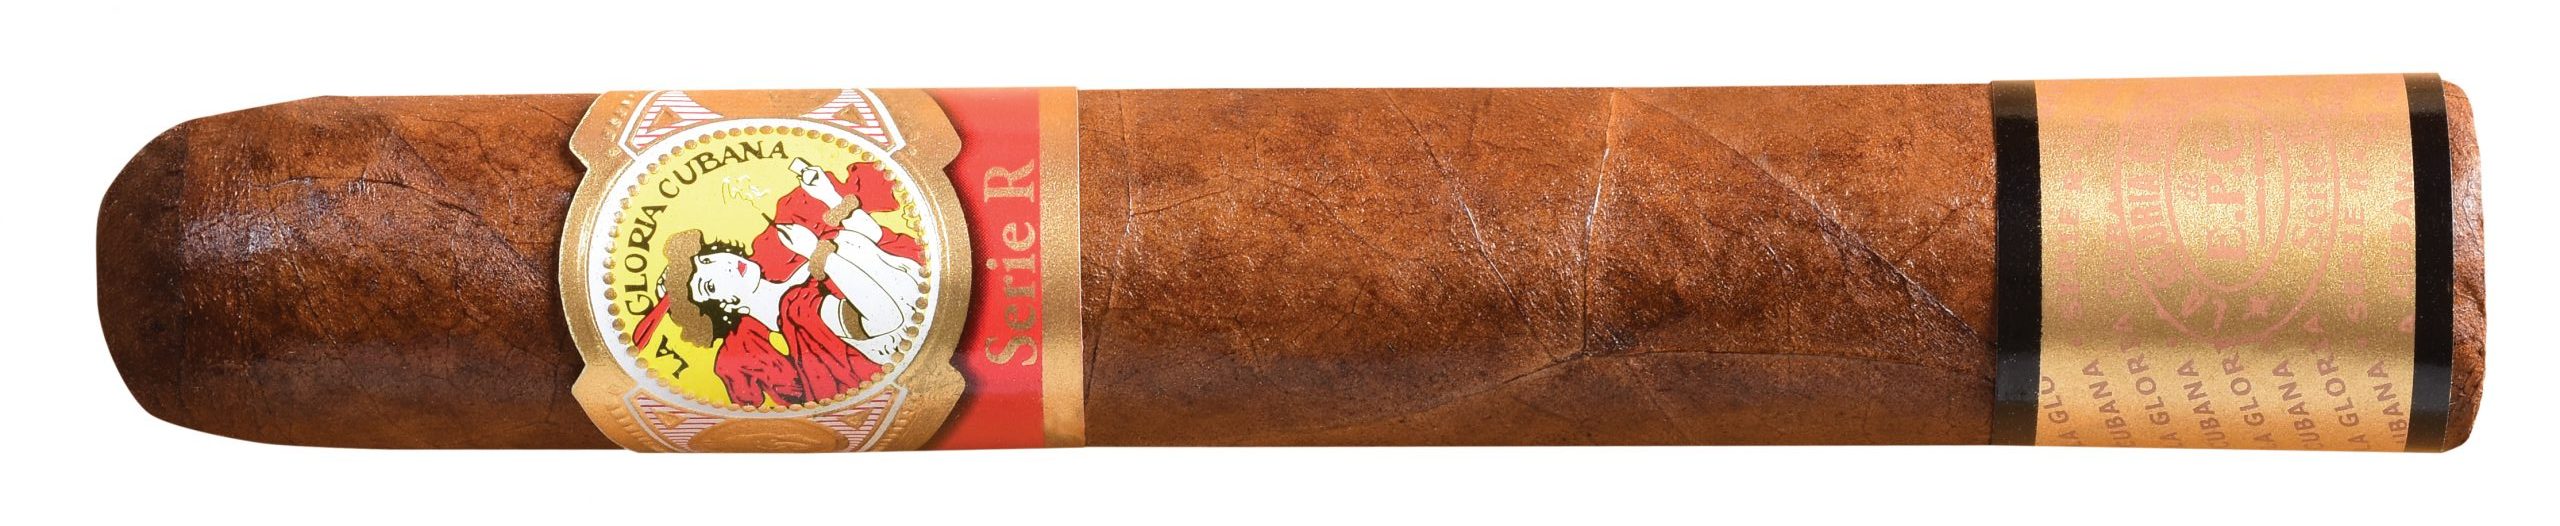 la gloria cubana serie r number 5 single cigar